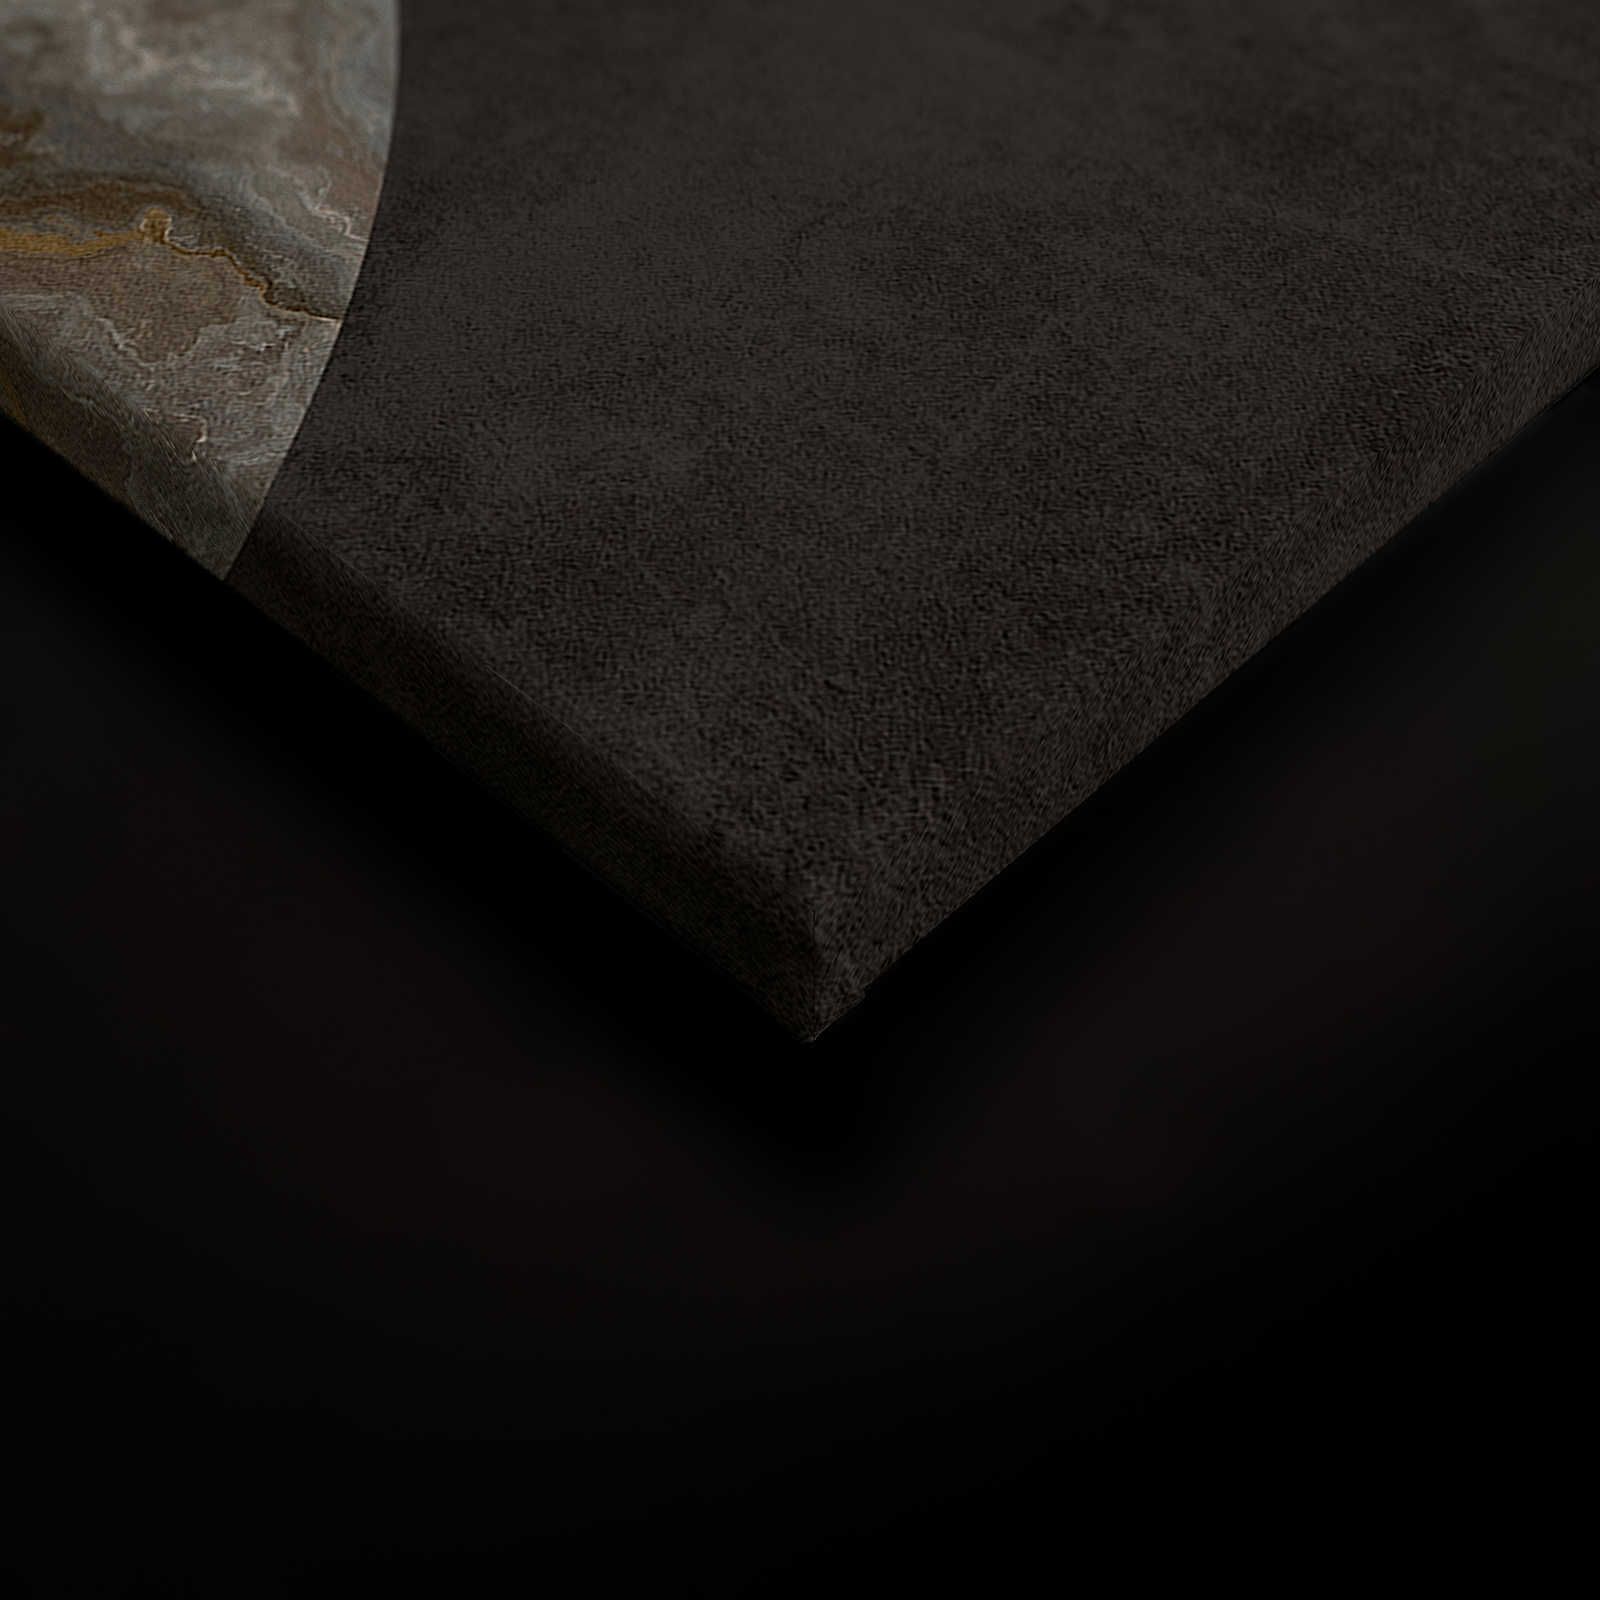             Luna 1 - Marbre toile cercle design & aspect plâtre noir - 0,90 m x 0,60 m
        